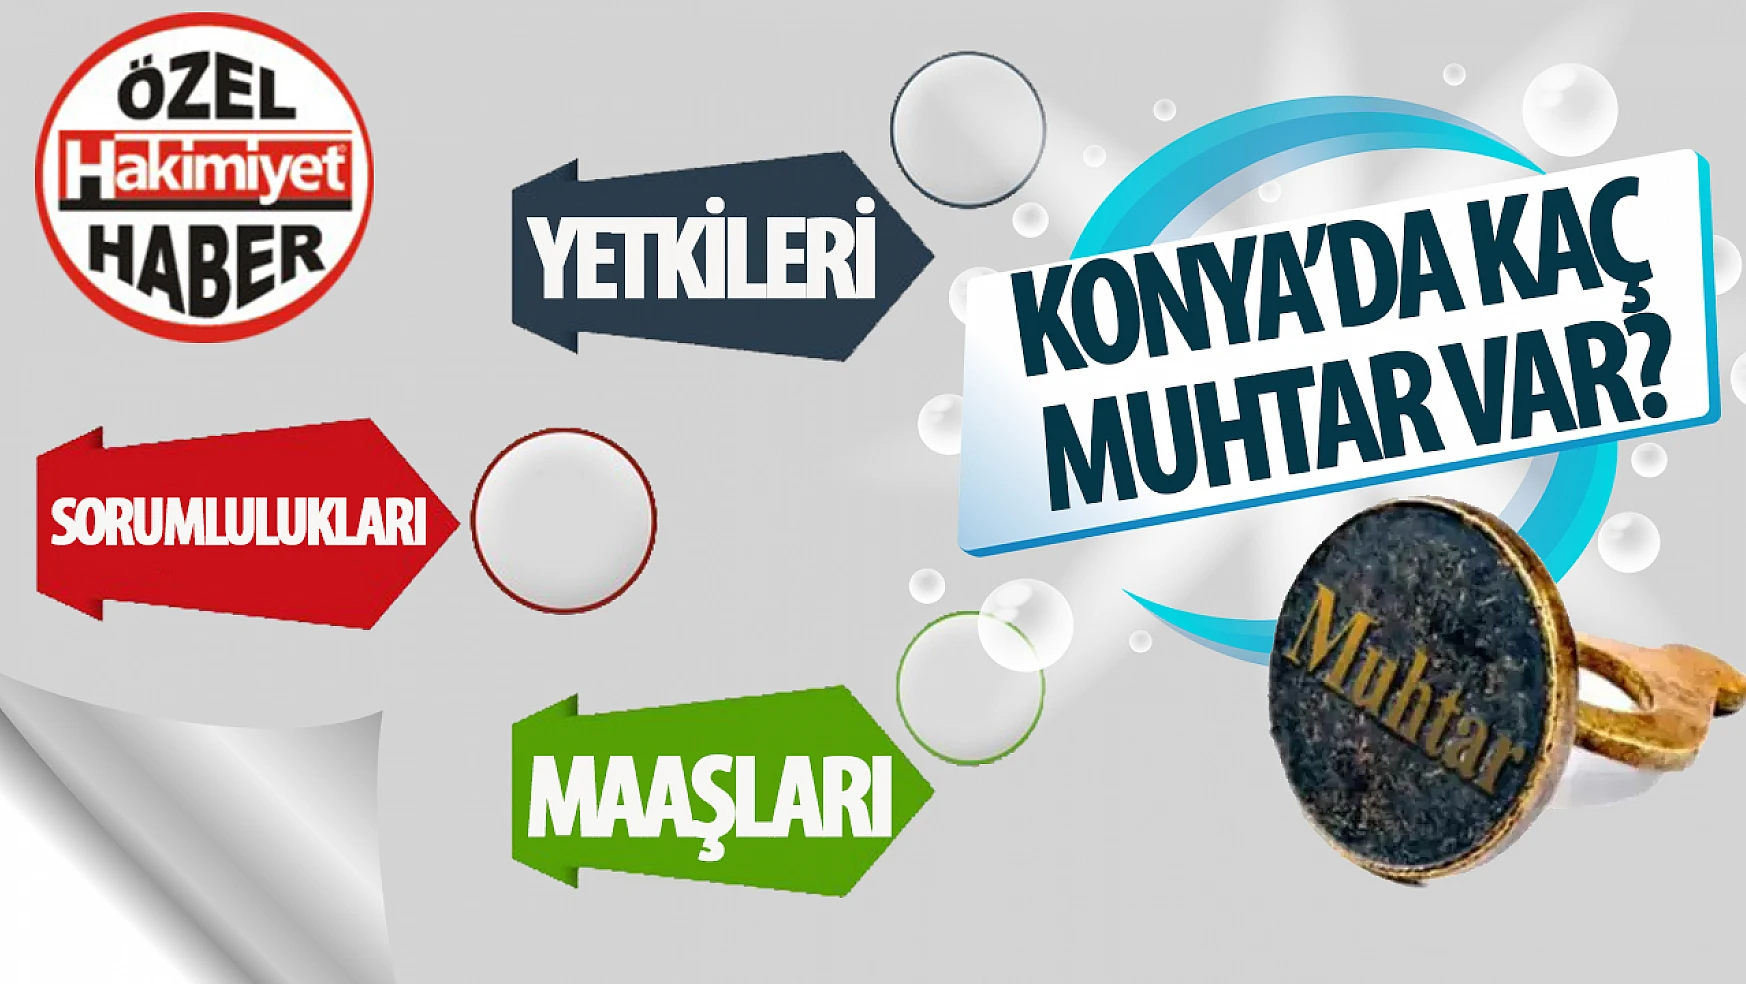 Konya'da Muhtar Sayısı, Maaşları ve Yetkileri: Ereğli Zirvede